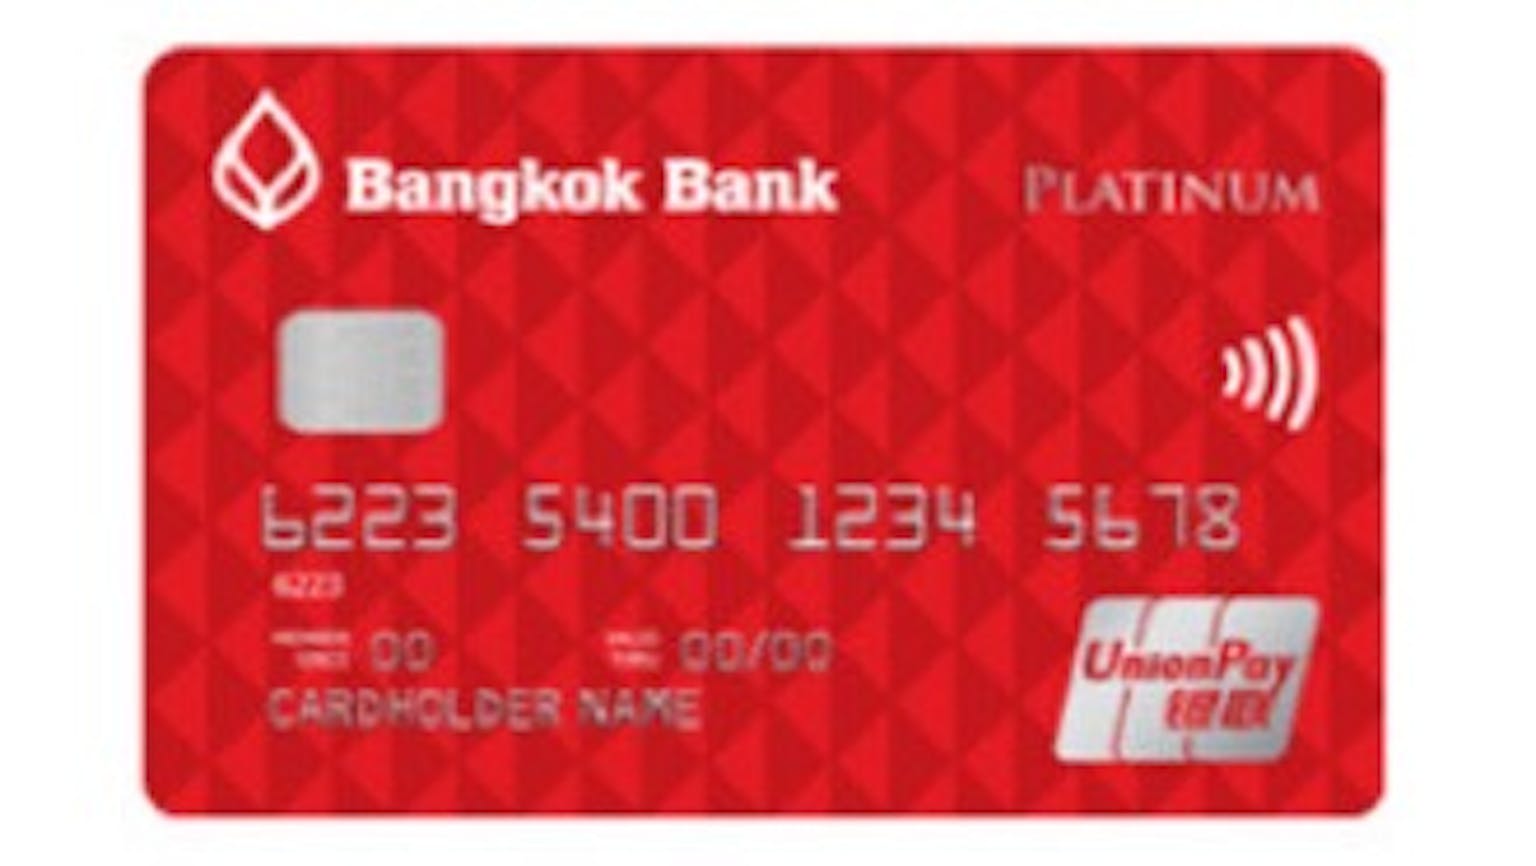 บัตรเครดิตยูเนี่ยนเพย์ แพลทินั่ม ธนาคารกรุงเทพ 